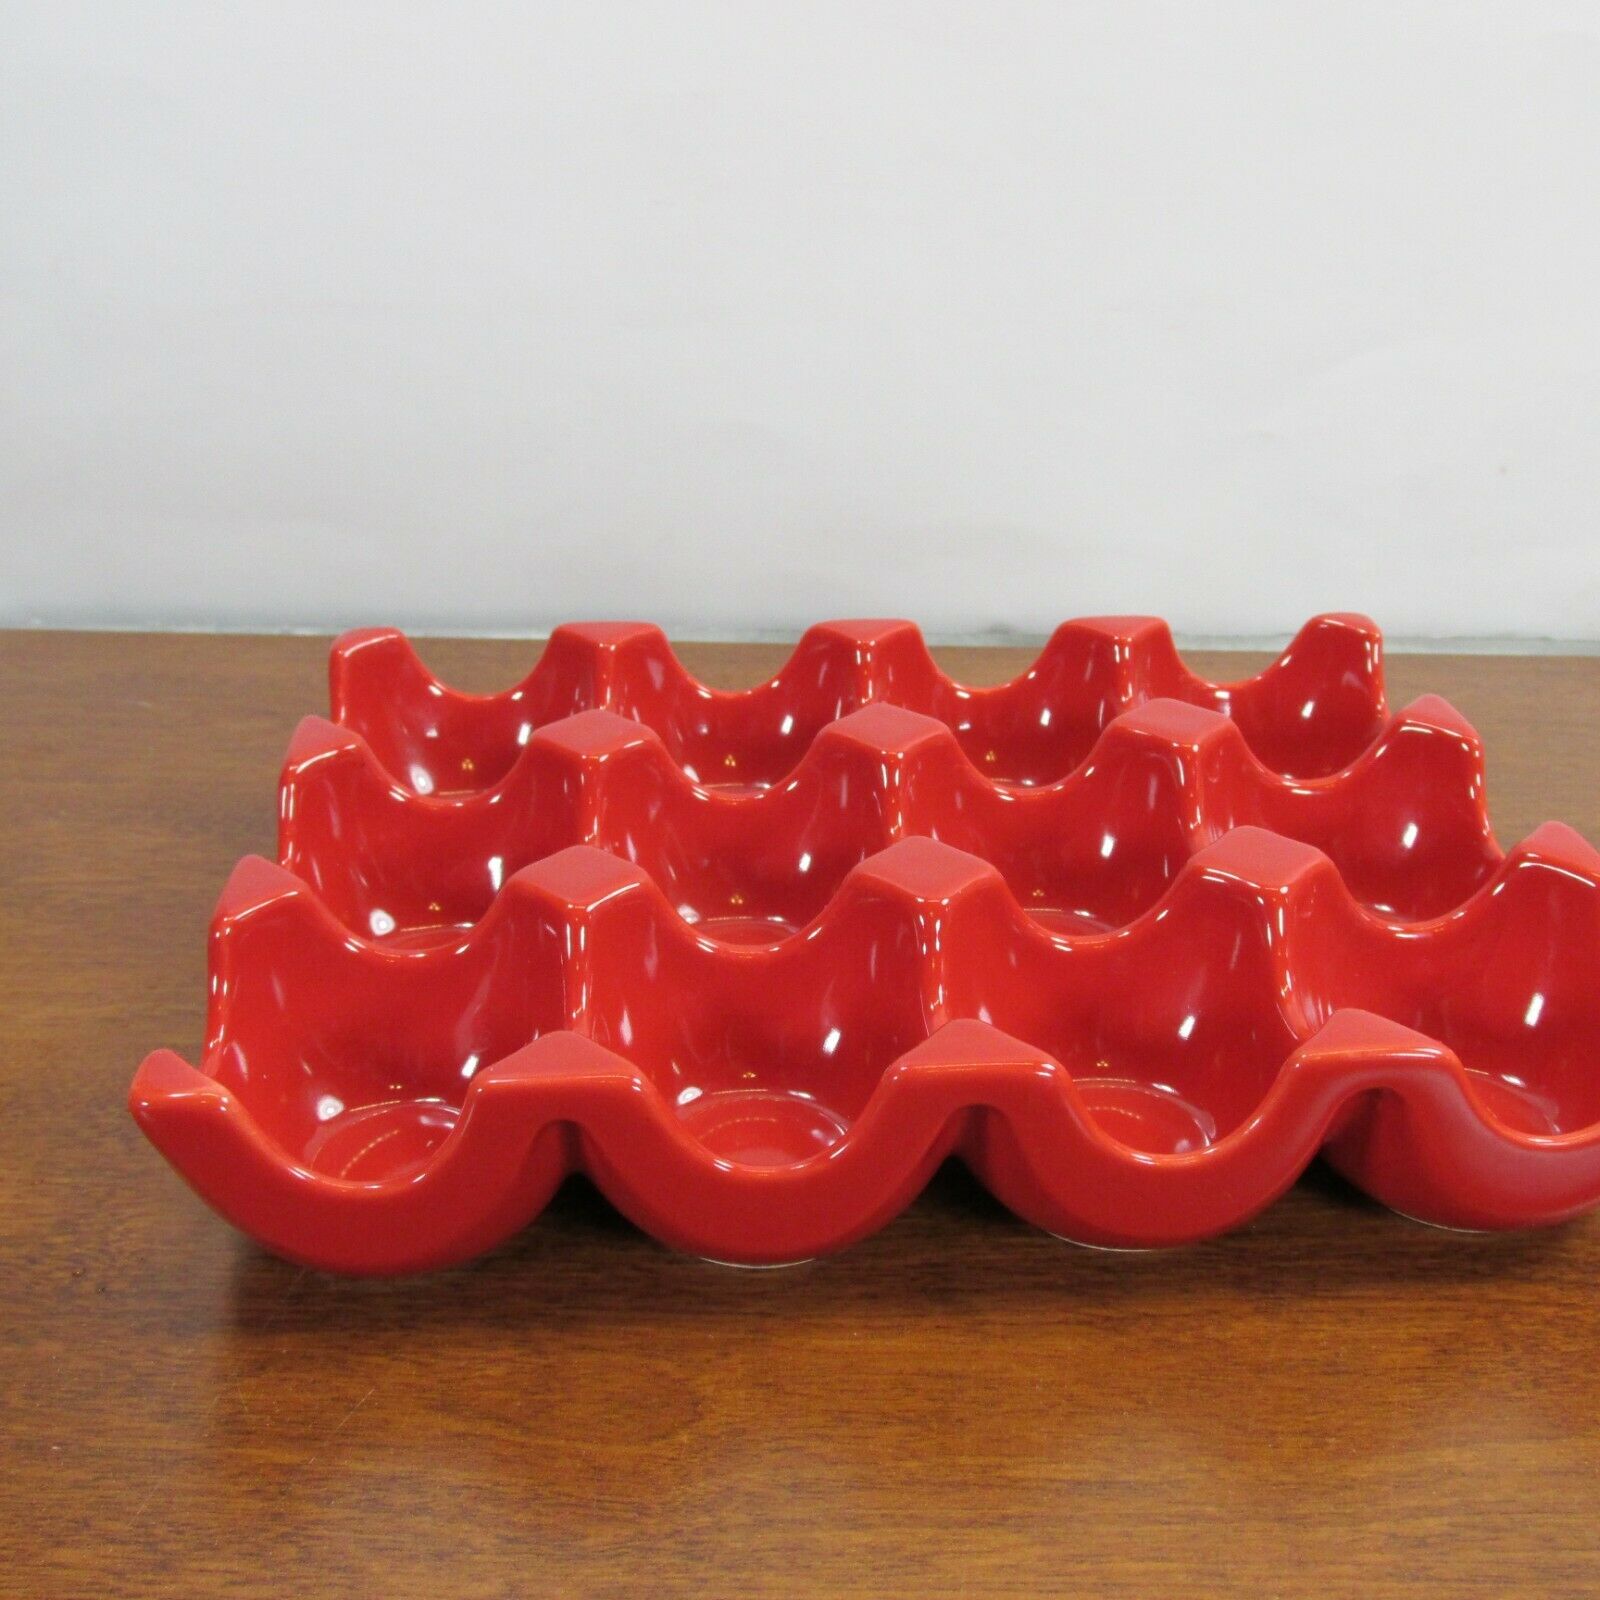 Rachel Ray Red Ceramic 12 Egg Crate Holder